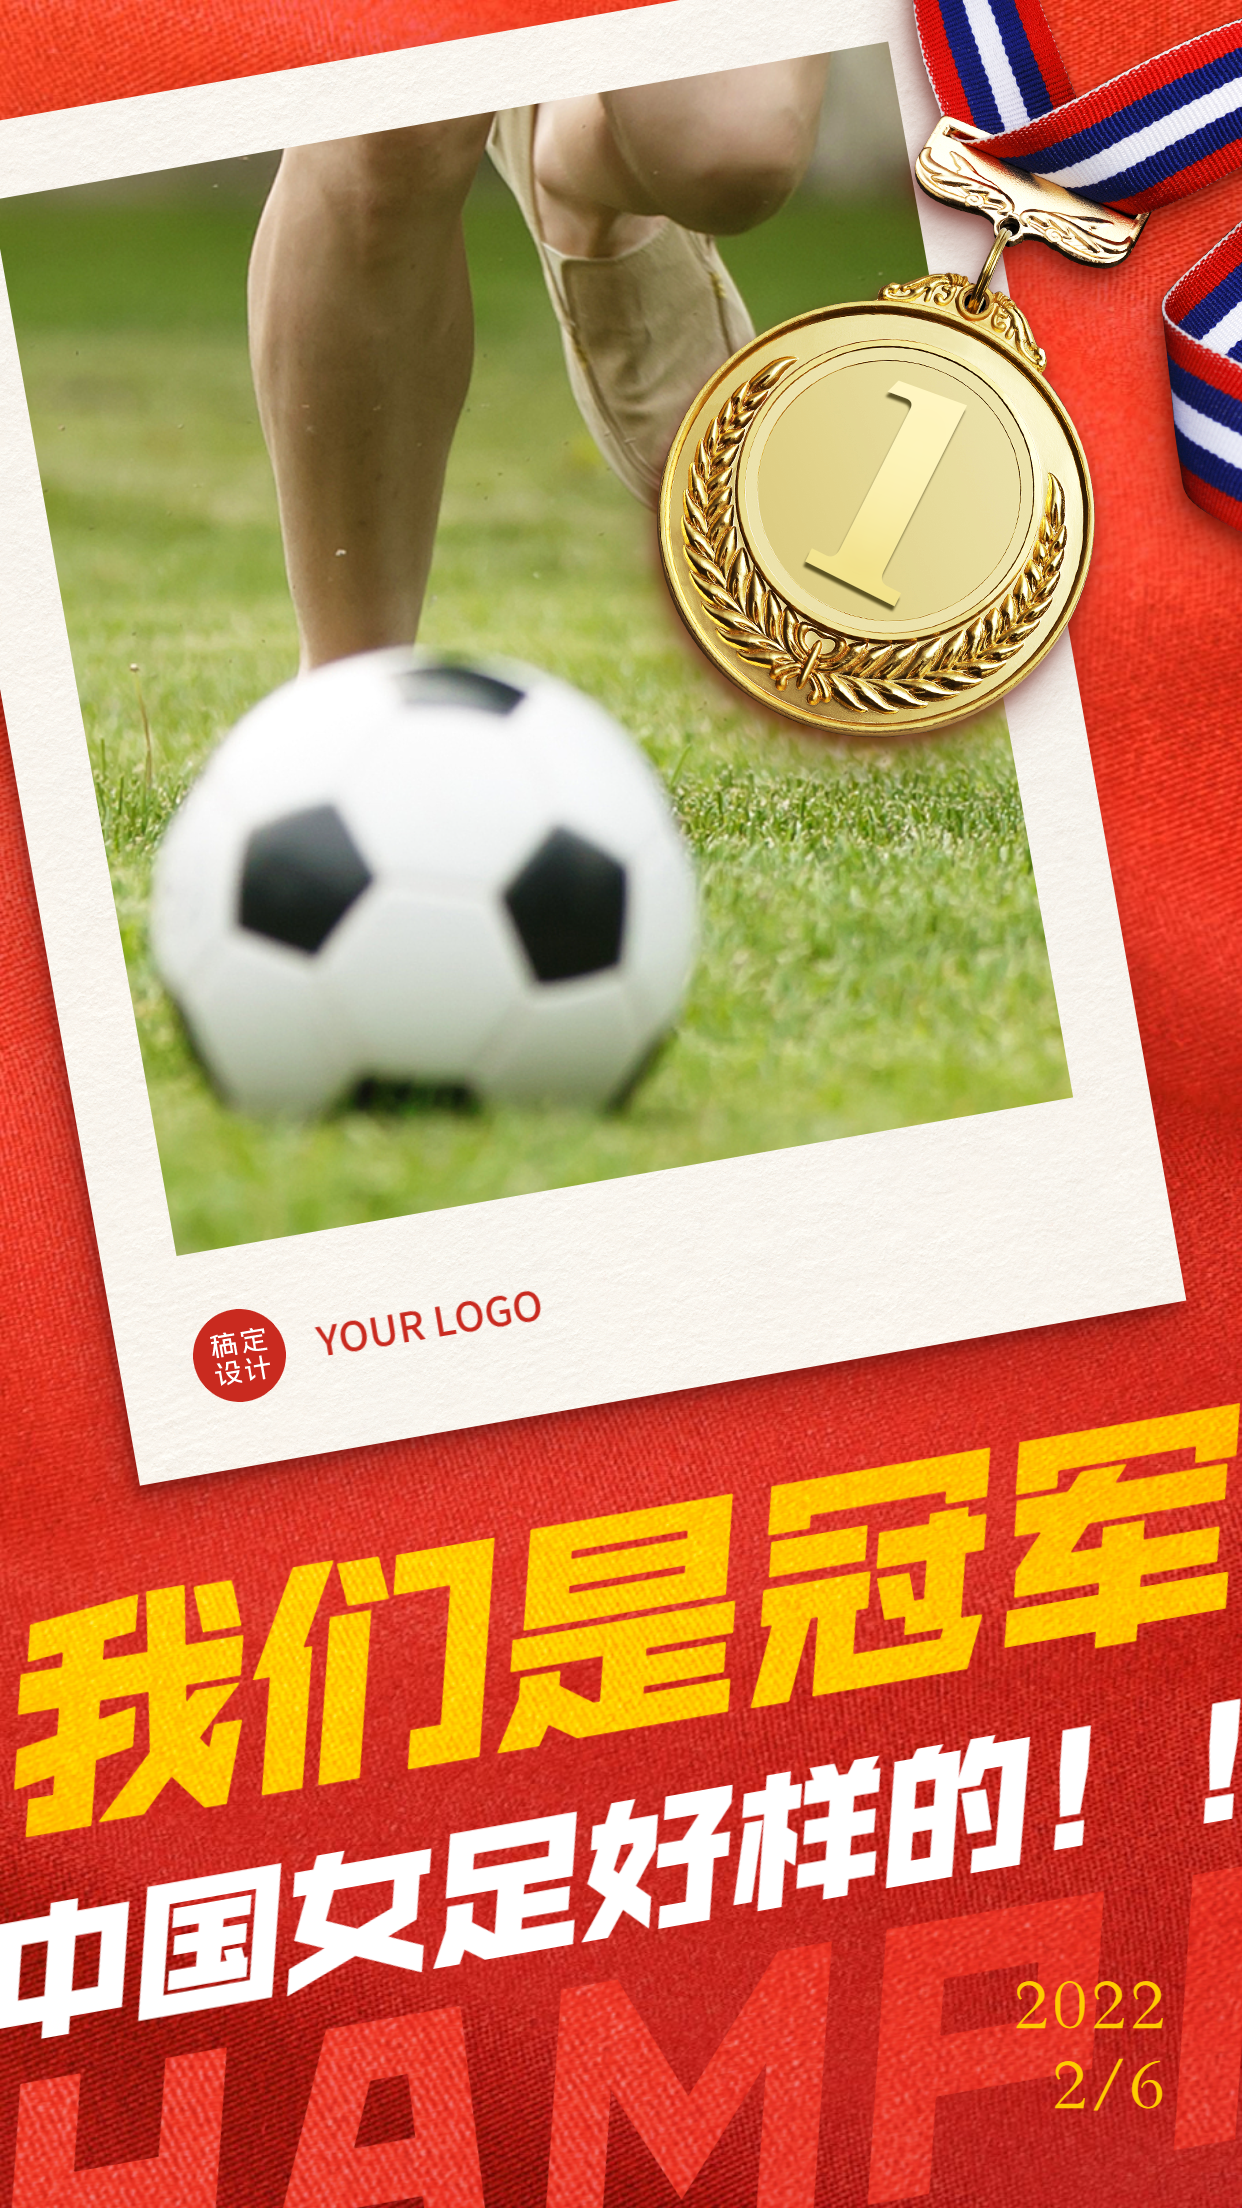 中国女足亚洲杯冠军金牌祝福海报预览效果